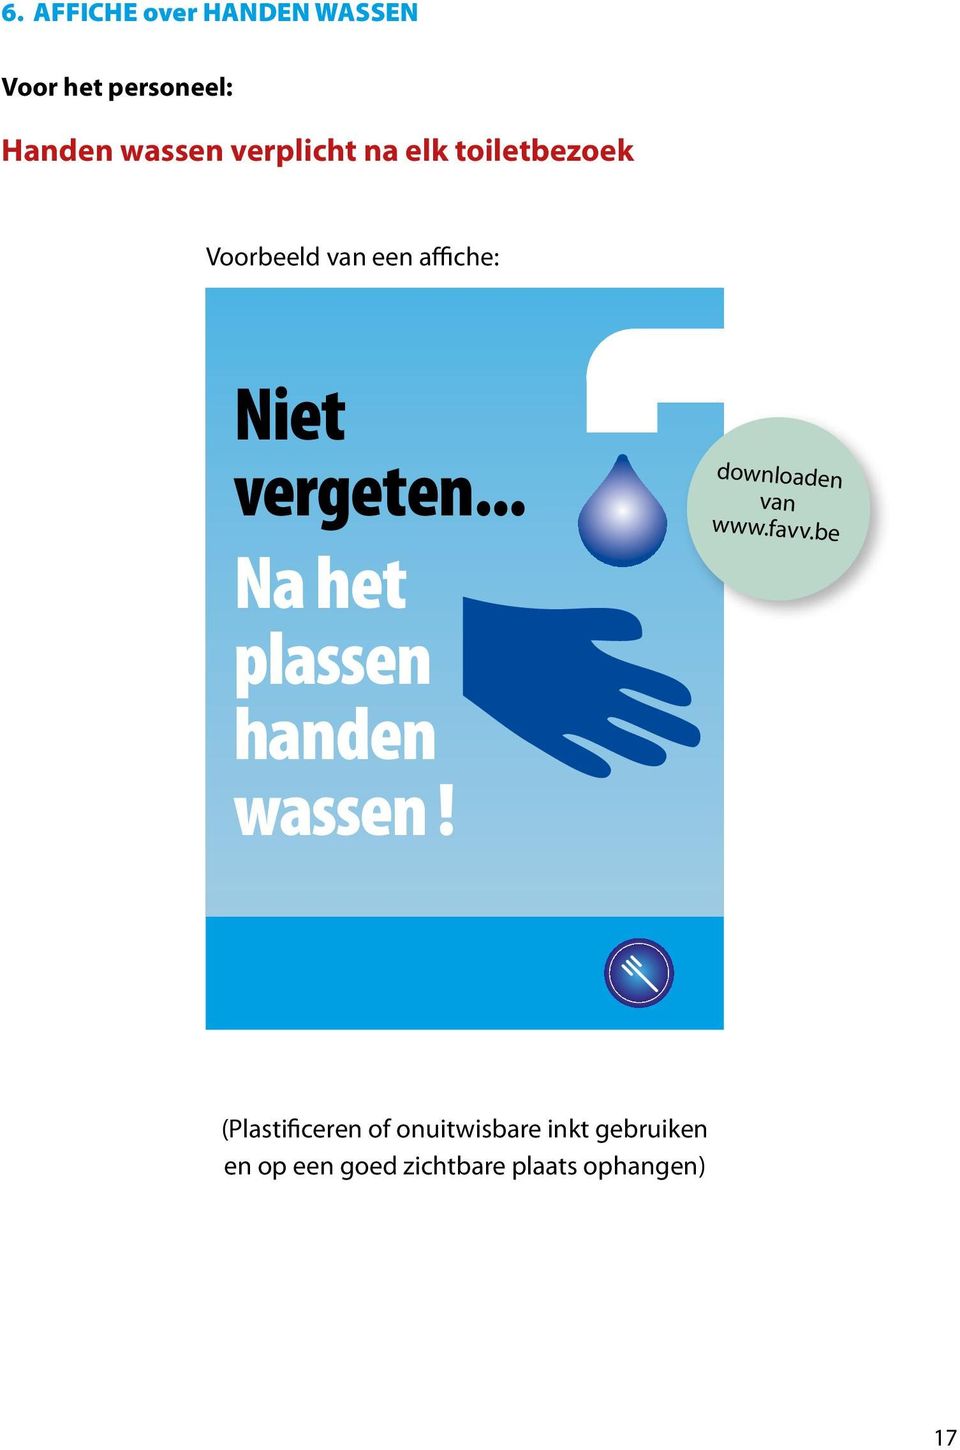 .. Na het plassen handen wassen! downloaden van www.favv.be ben graag... rstel!